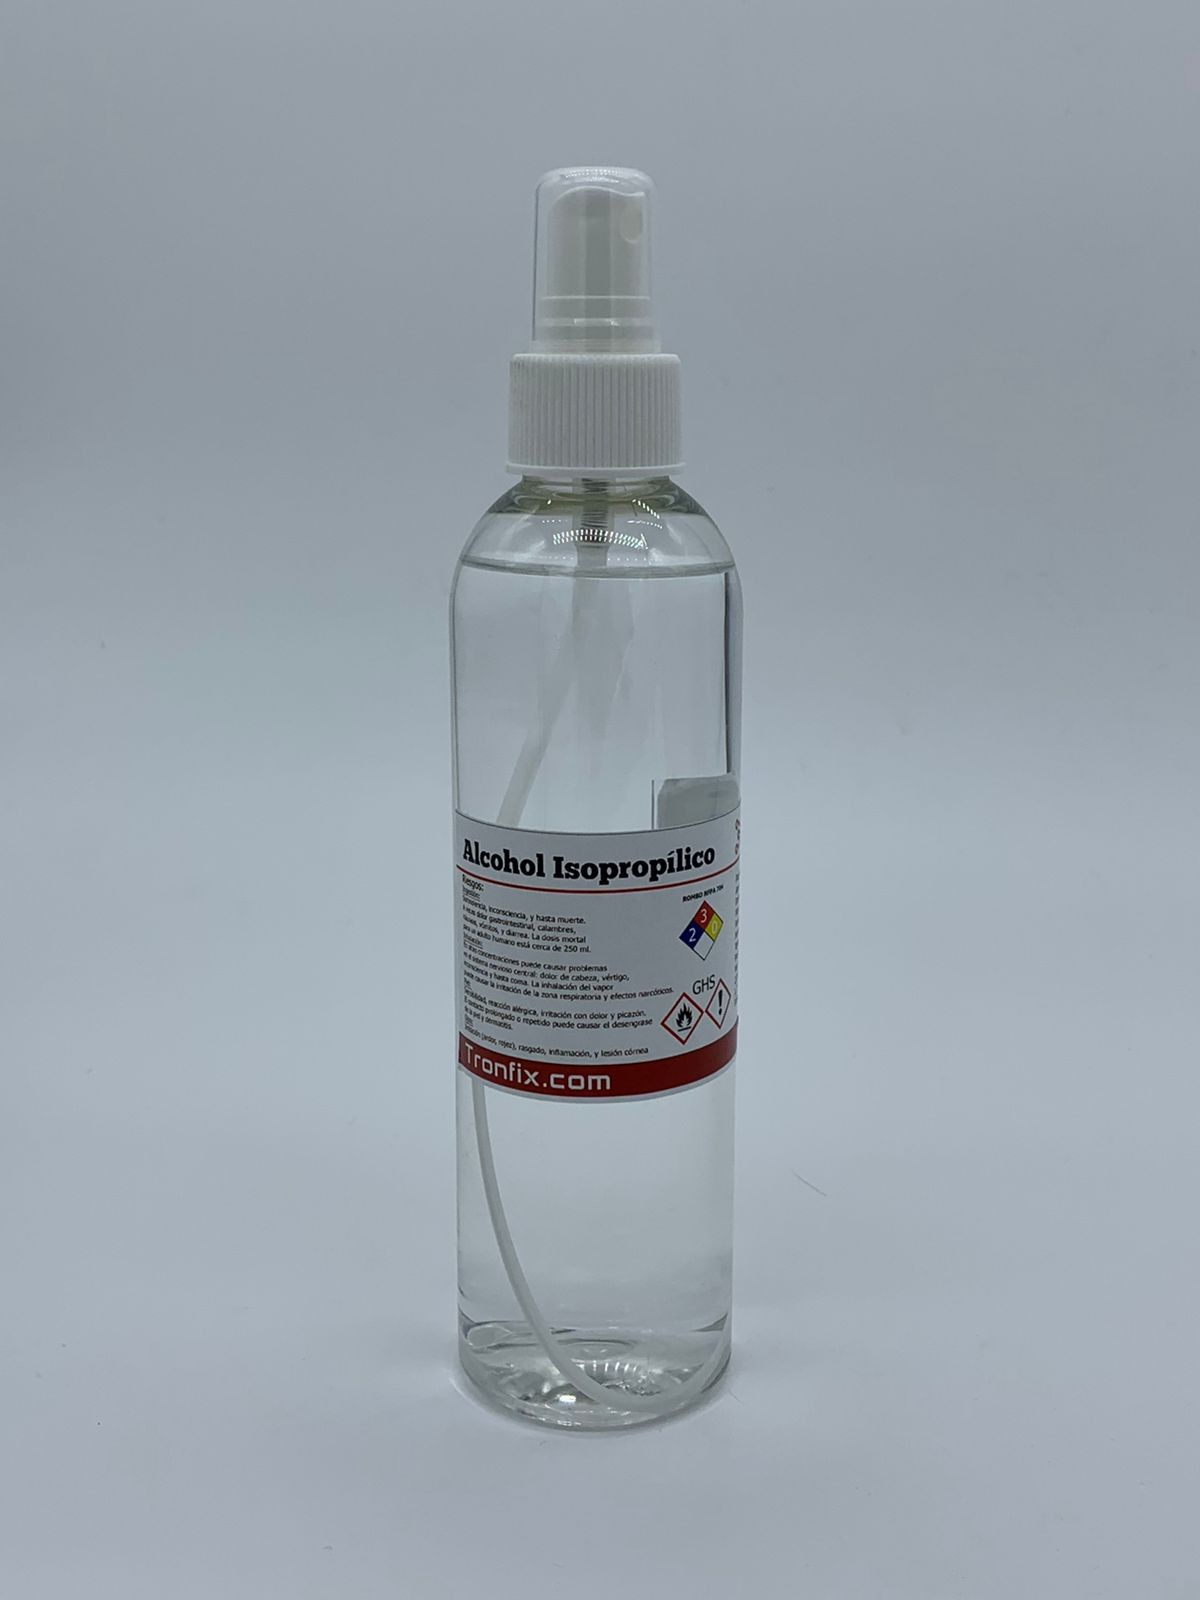 THIDO - Alcohol Isopropilico 250ml Atomizador